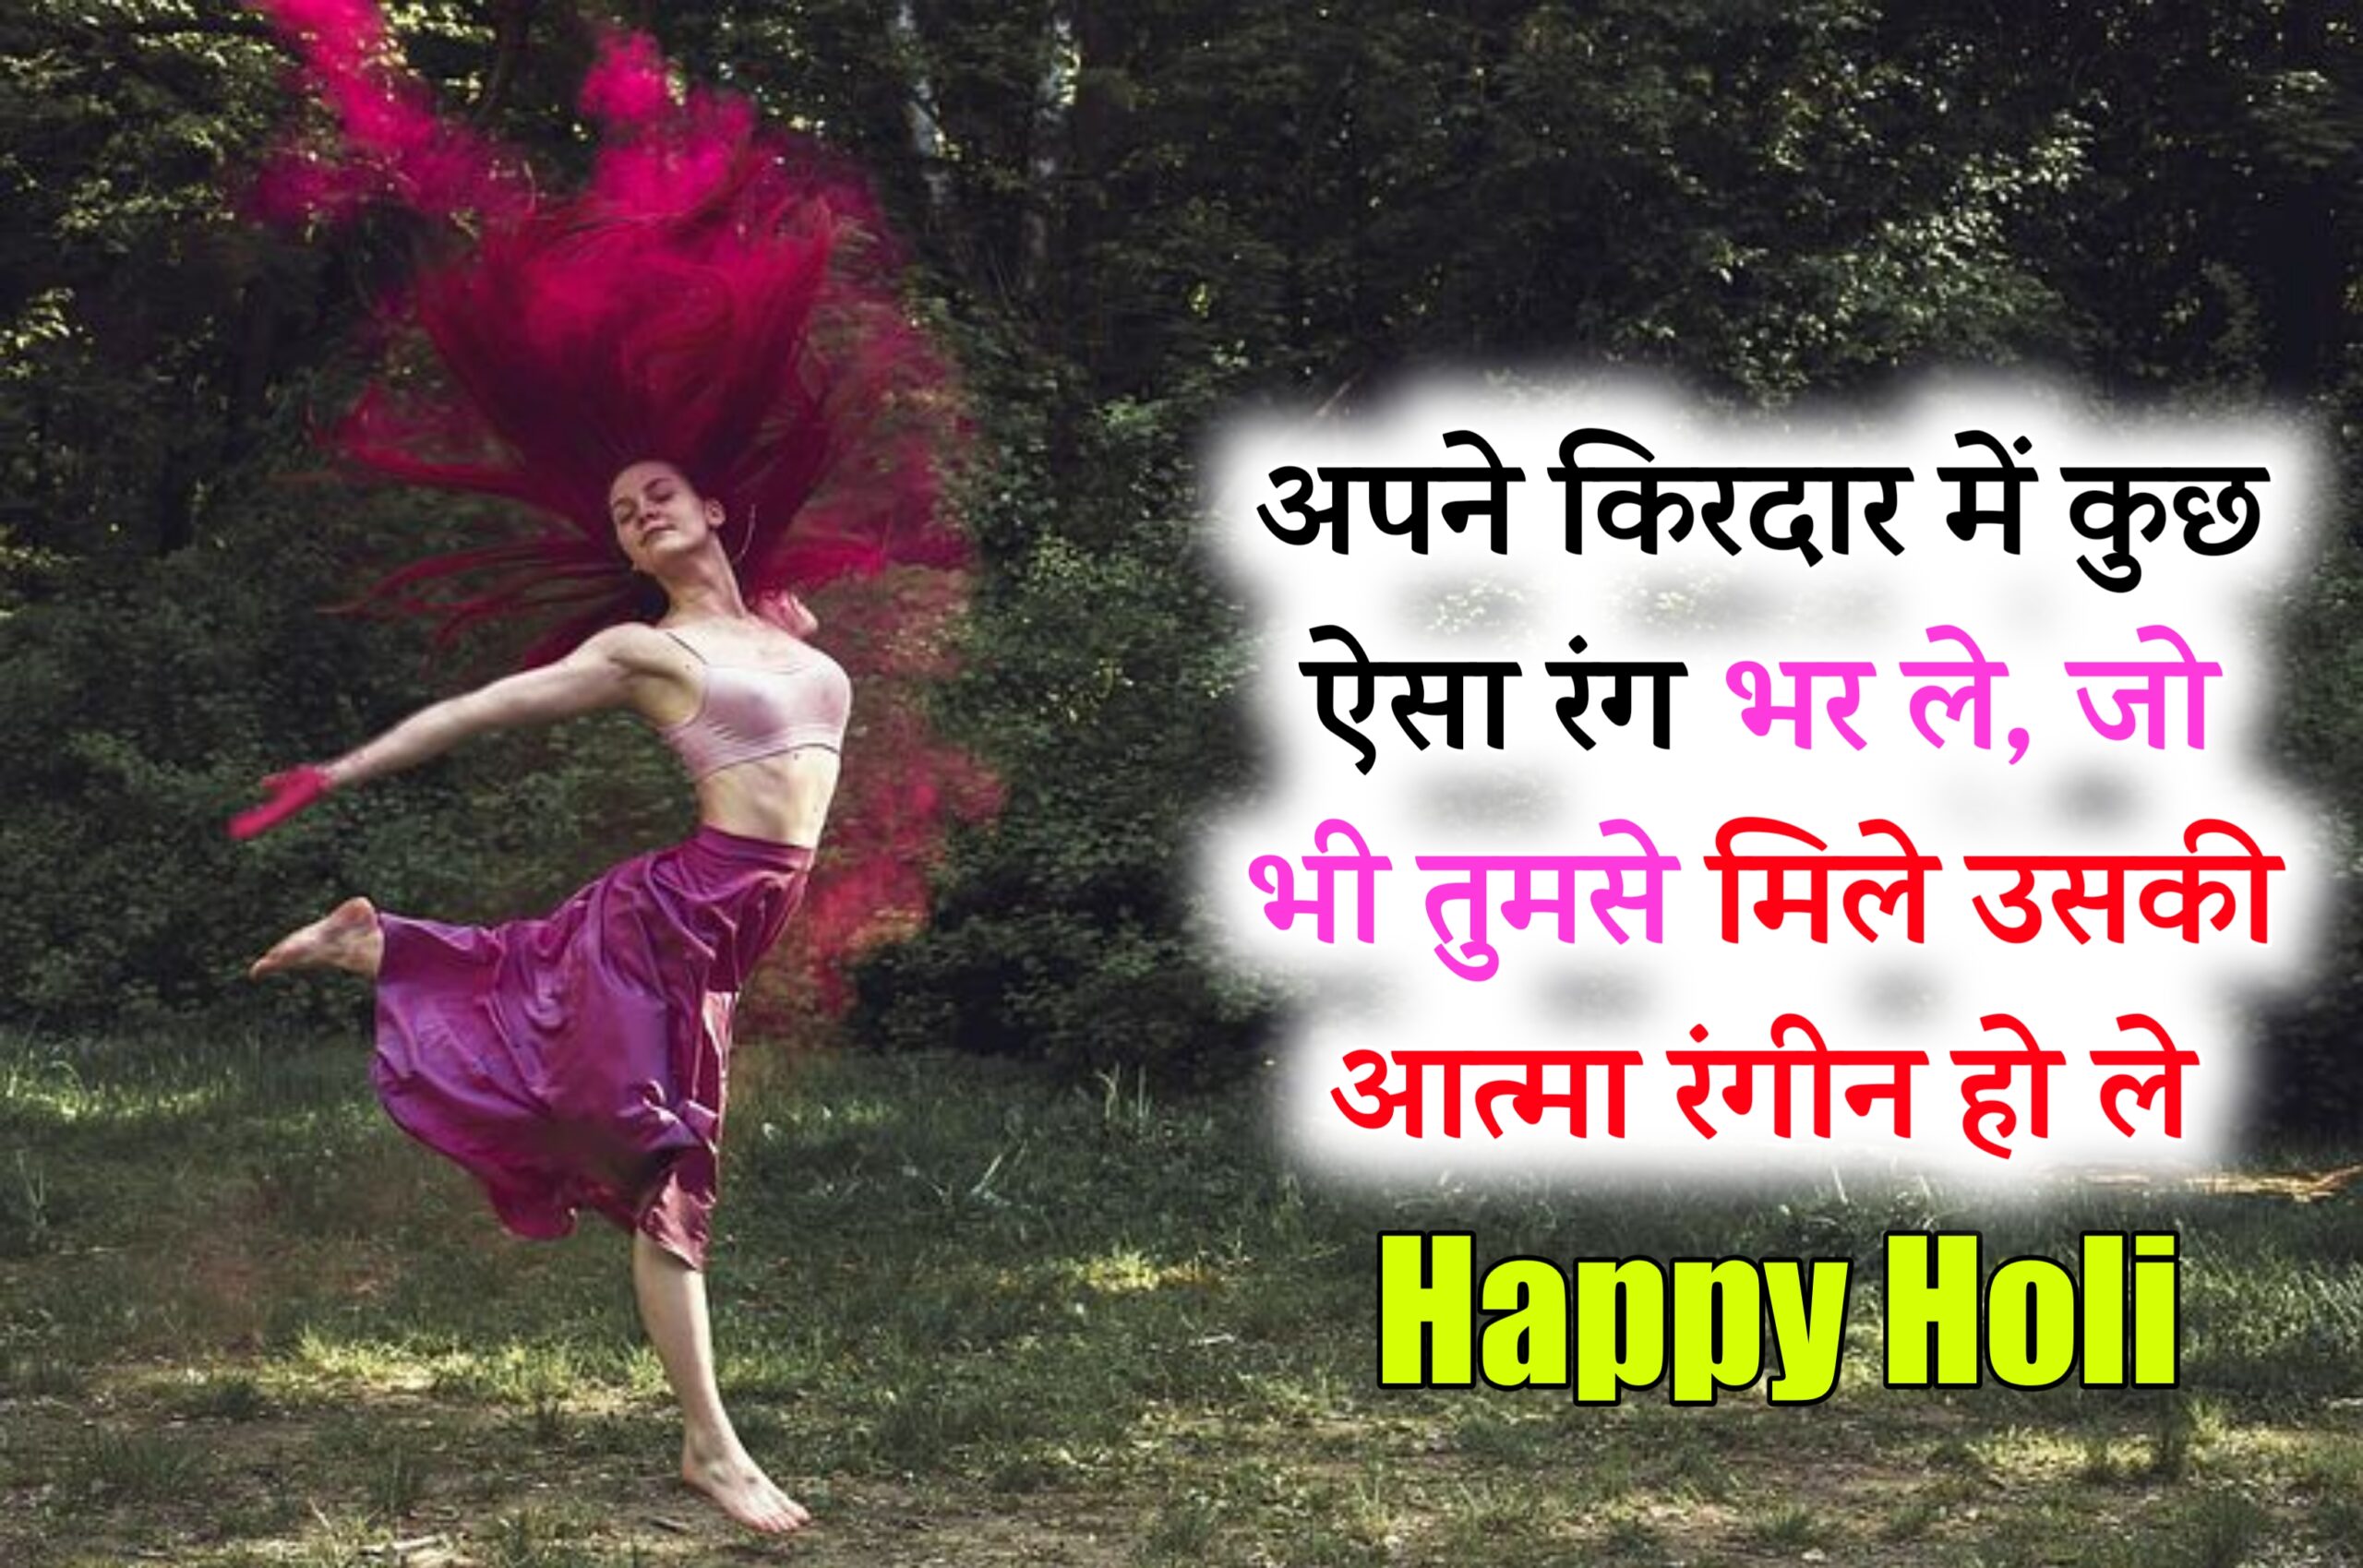 Happy holi status | हैप्पी होली स्टेटस 2024 | Holi Status 2024,holi status in hindi 2024,holi shayari in hindi,holi quotes in hindi,holi shayari 2024,holi quotes 2024,happy holi status in hindi,happy holi quotes in hindi 2024,happy holi shayari in hindi,Holi Wishes SMS and Quotes in Hindi: Find here Happy Holi Wishes in Hindi SMS, Happy Holi Status in Hindi, for Girlfriend Holi Wishes Quotes in Hindi and also Holi Shayari in Hindi, Holika dahan Wishes SMS,हैप्पी होली स्टेटस इन हिंदी,हैप्पी होली शायरी इन हिंदी,हैप्पी होली कोट्स इन हिंदी,होली पर शायरी 2024,होली पर स्टेटस 2024,Radha Krishna Happy Holi 2024